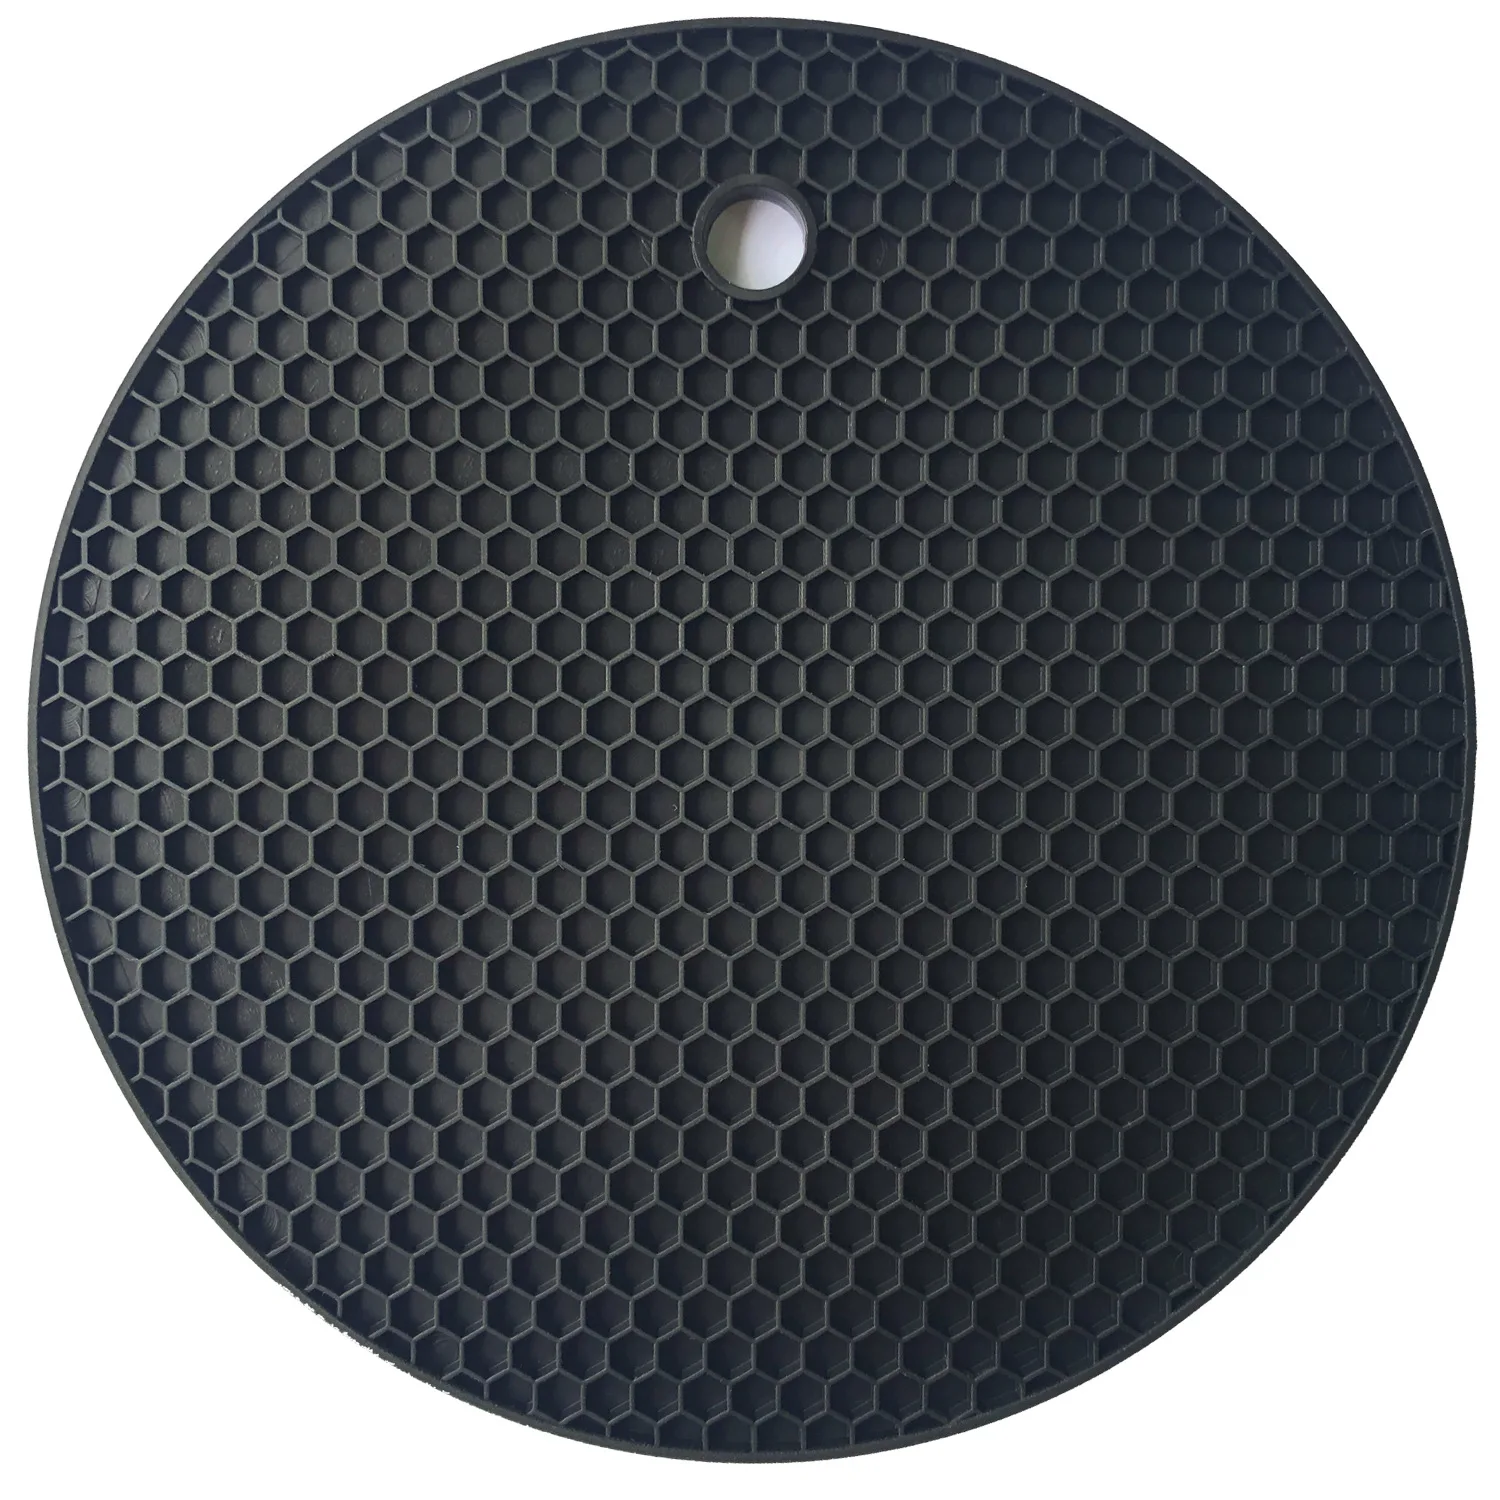 7 мм утолщаются 18 см круглый термостойкий силиконовый коврик подставки для кружек нескользящий держатель для кастрюли стол кухонная салфетка-подставка аксессуары - Цвет: Black